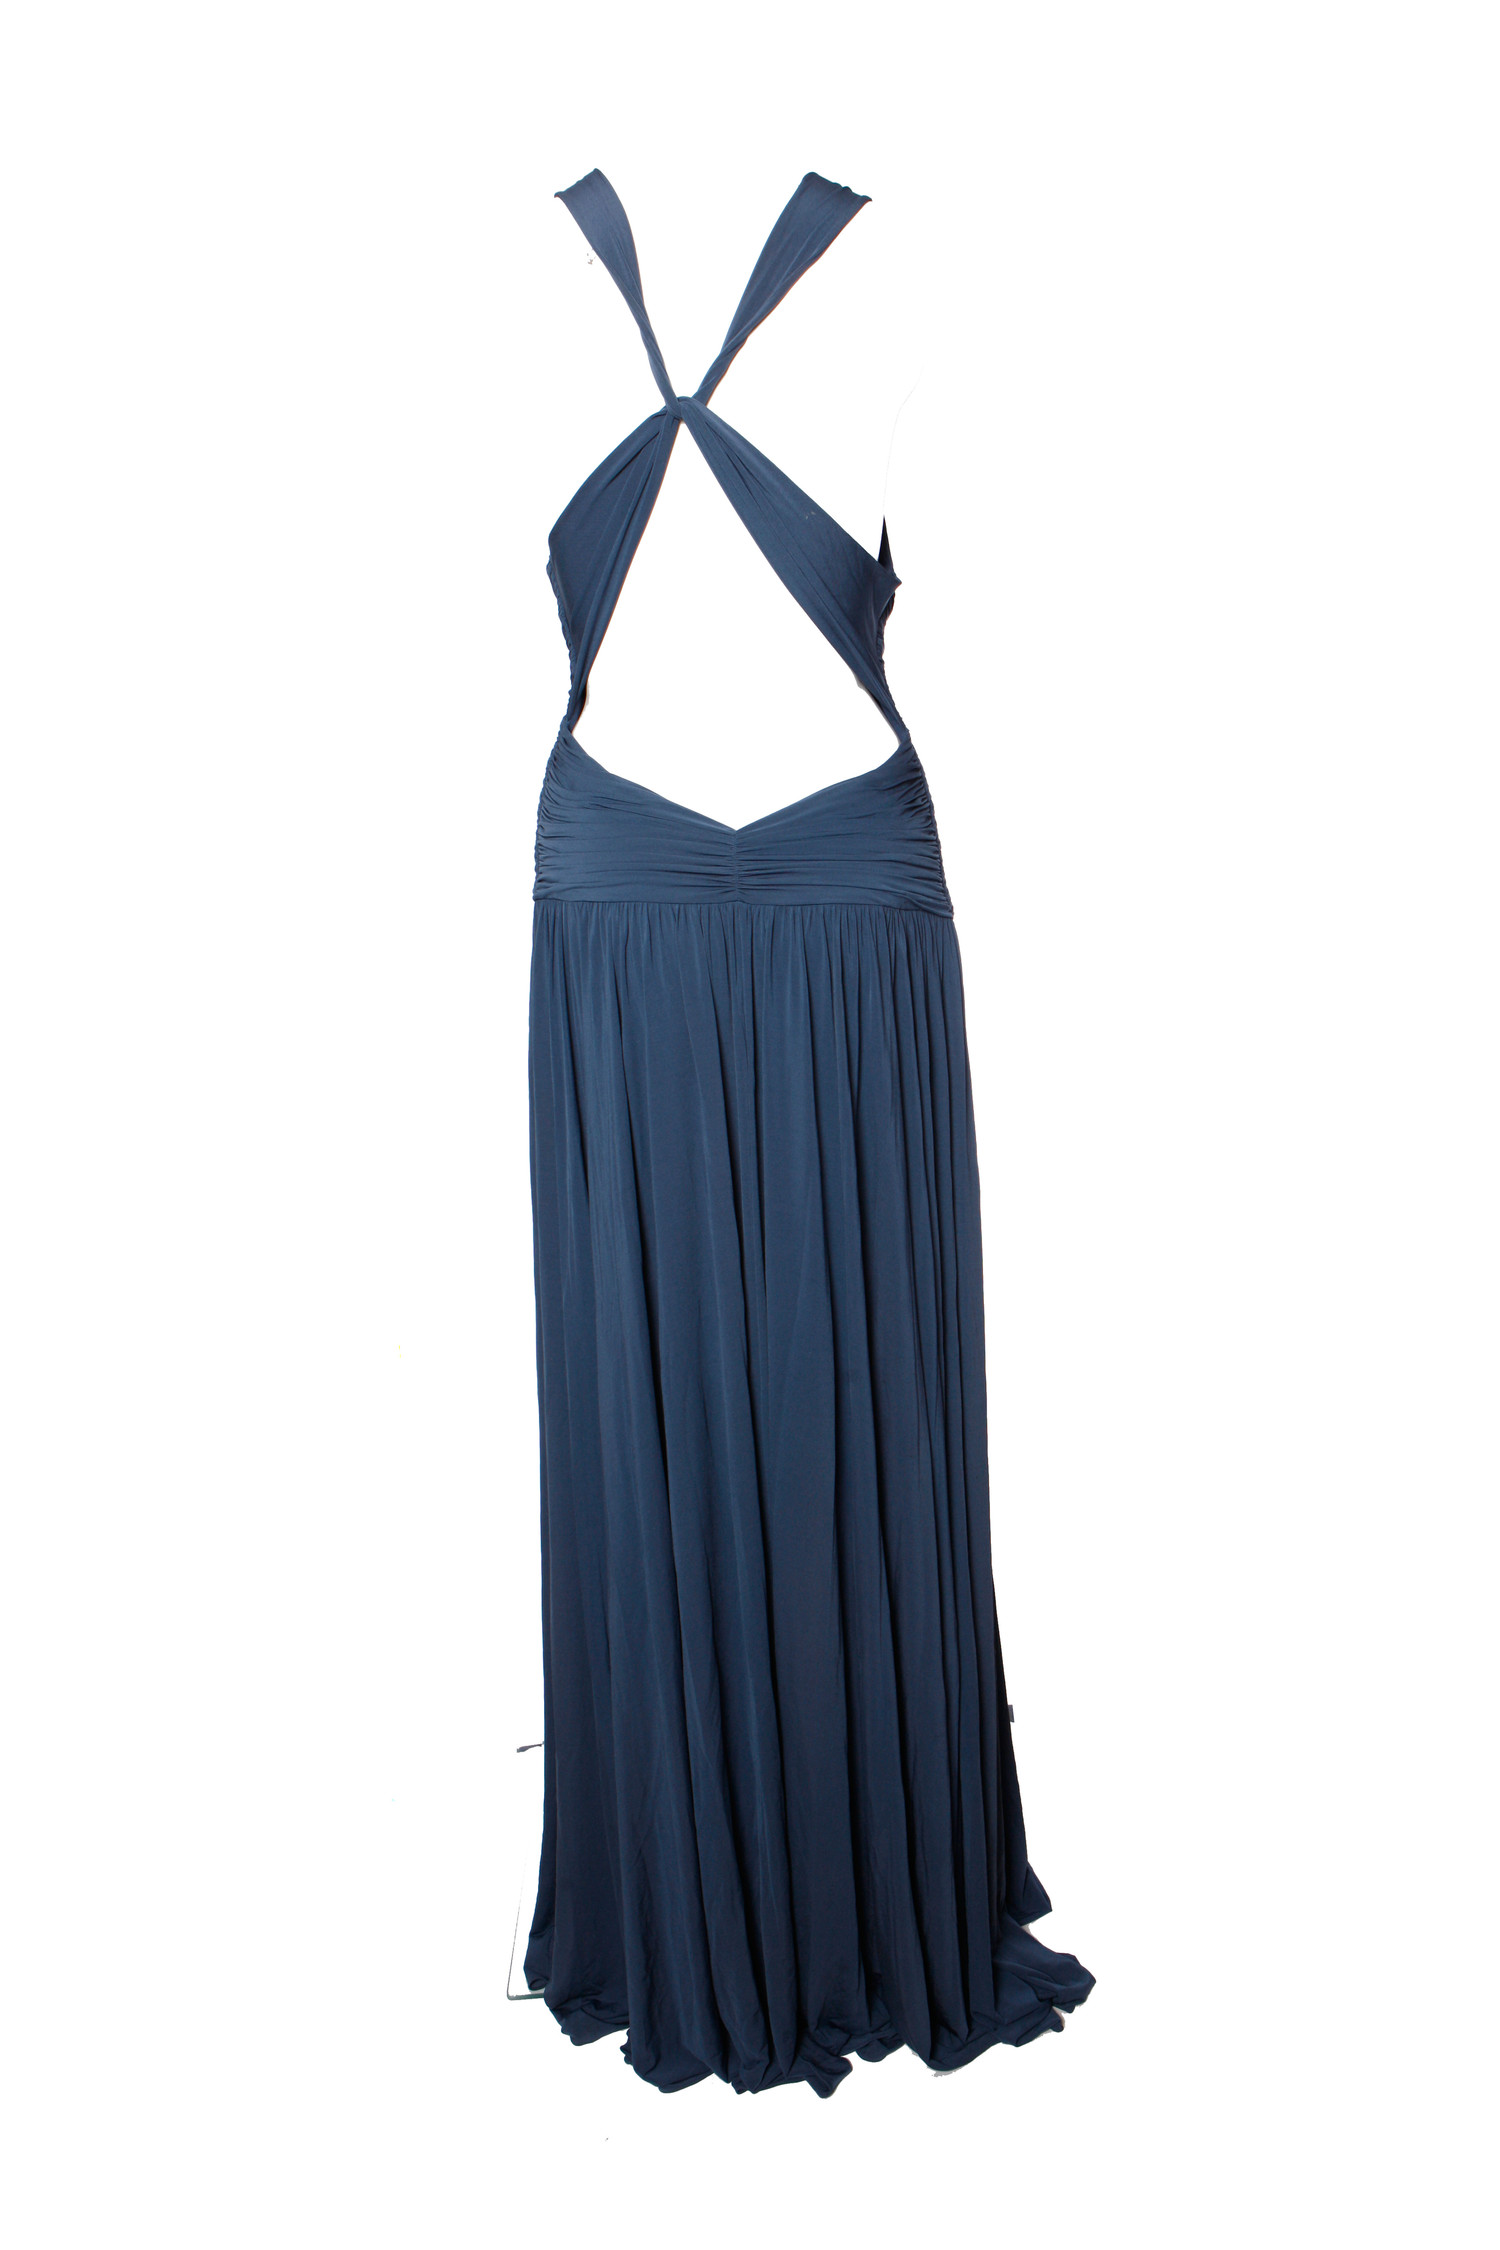 BCBG Maxazria, Blue evening dress. - Unique Designer Pieces